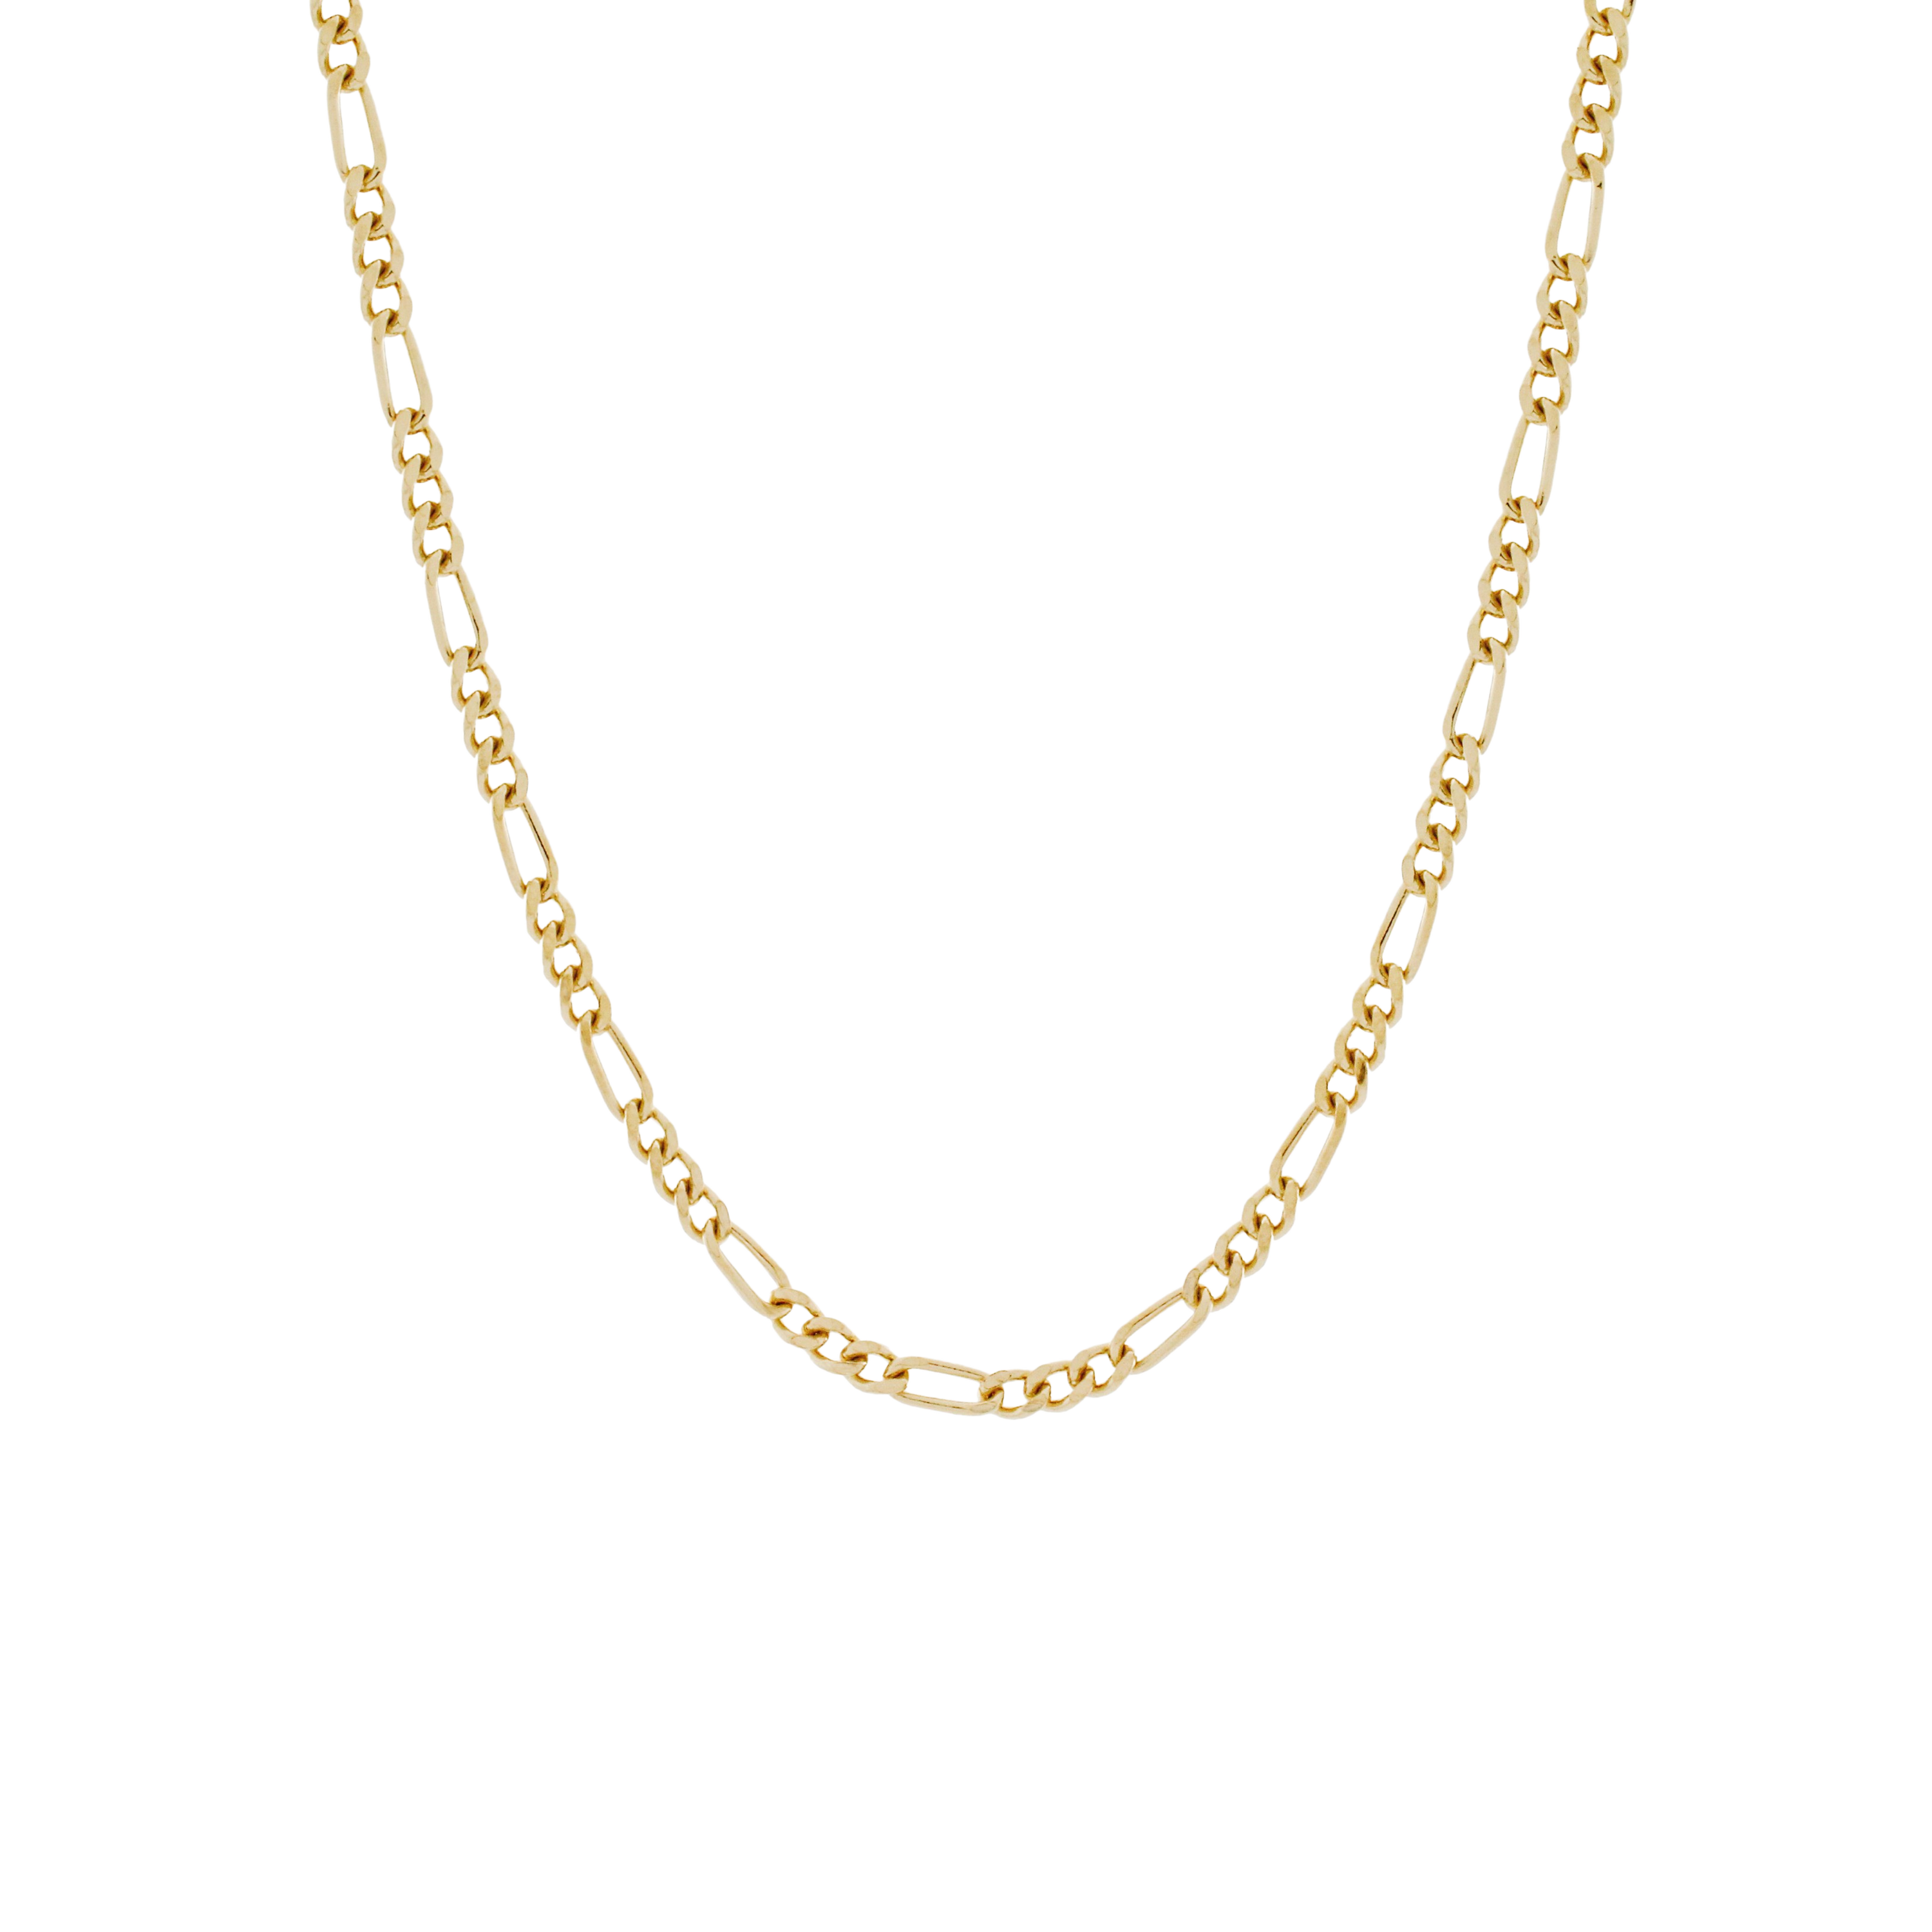 Seville Chain Necklace. Gold Vermeil